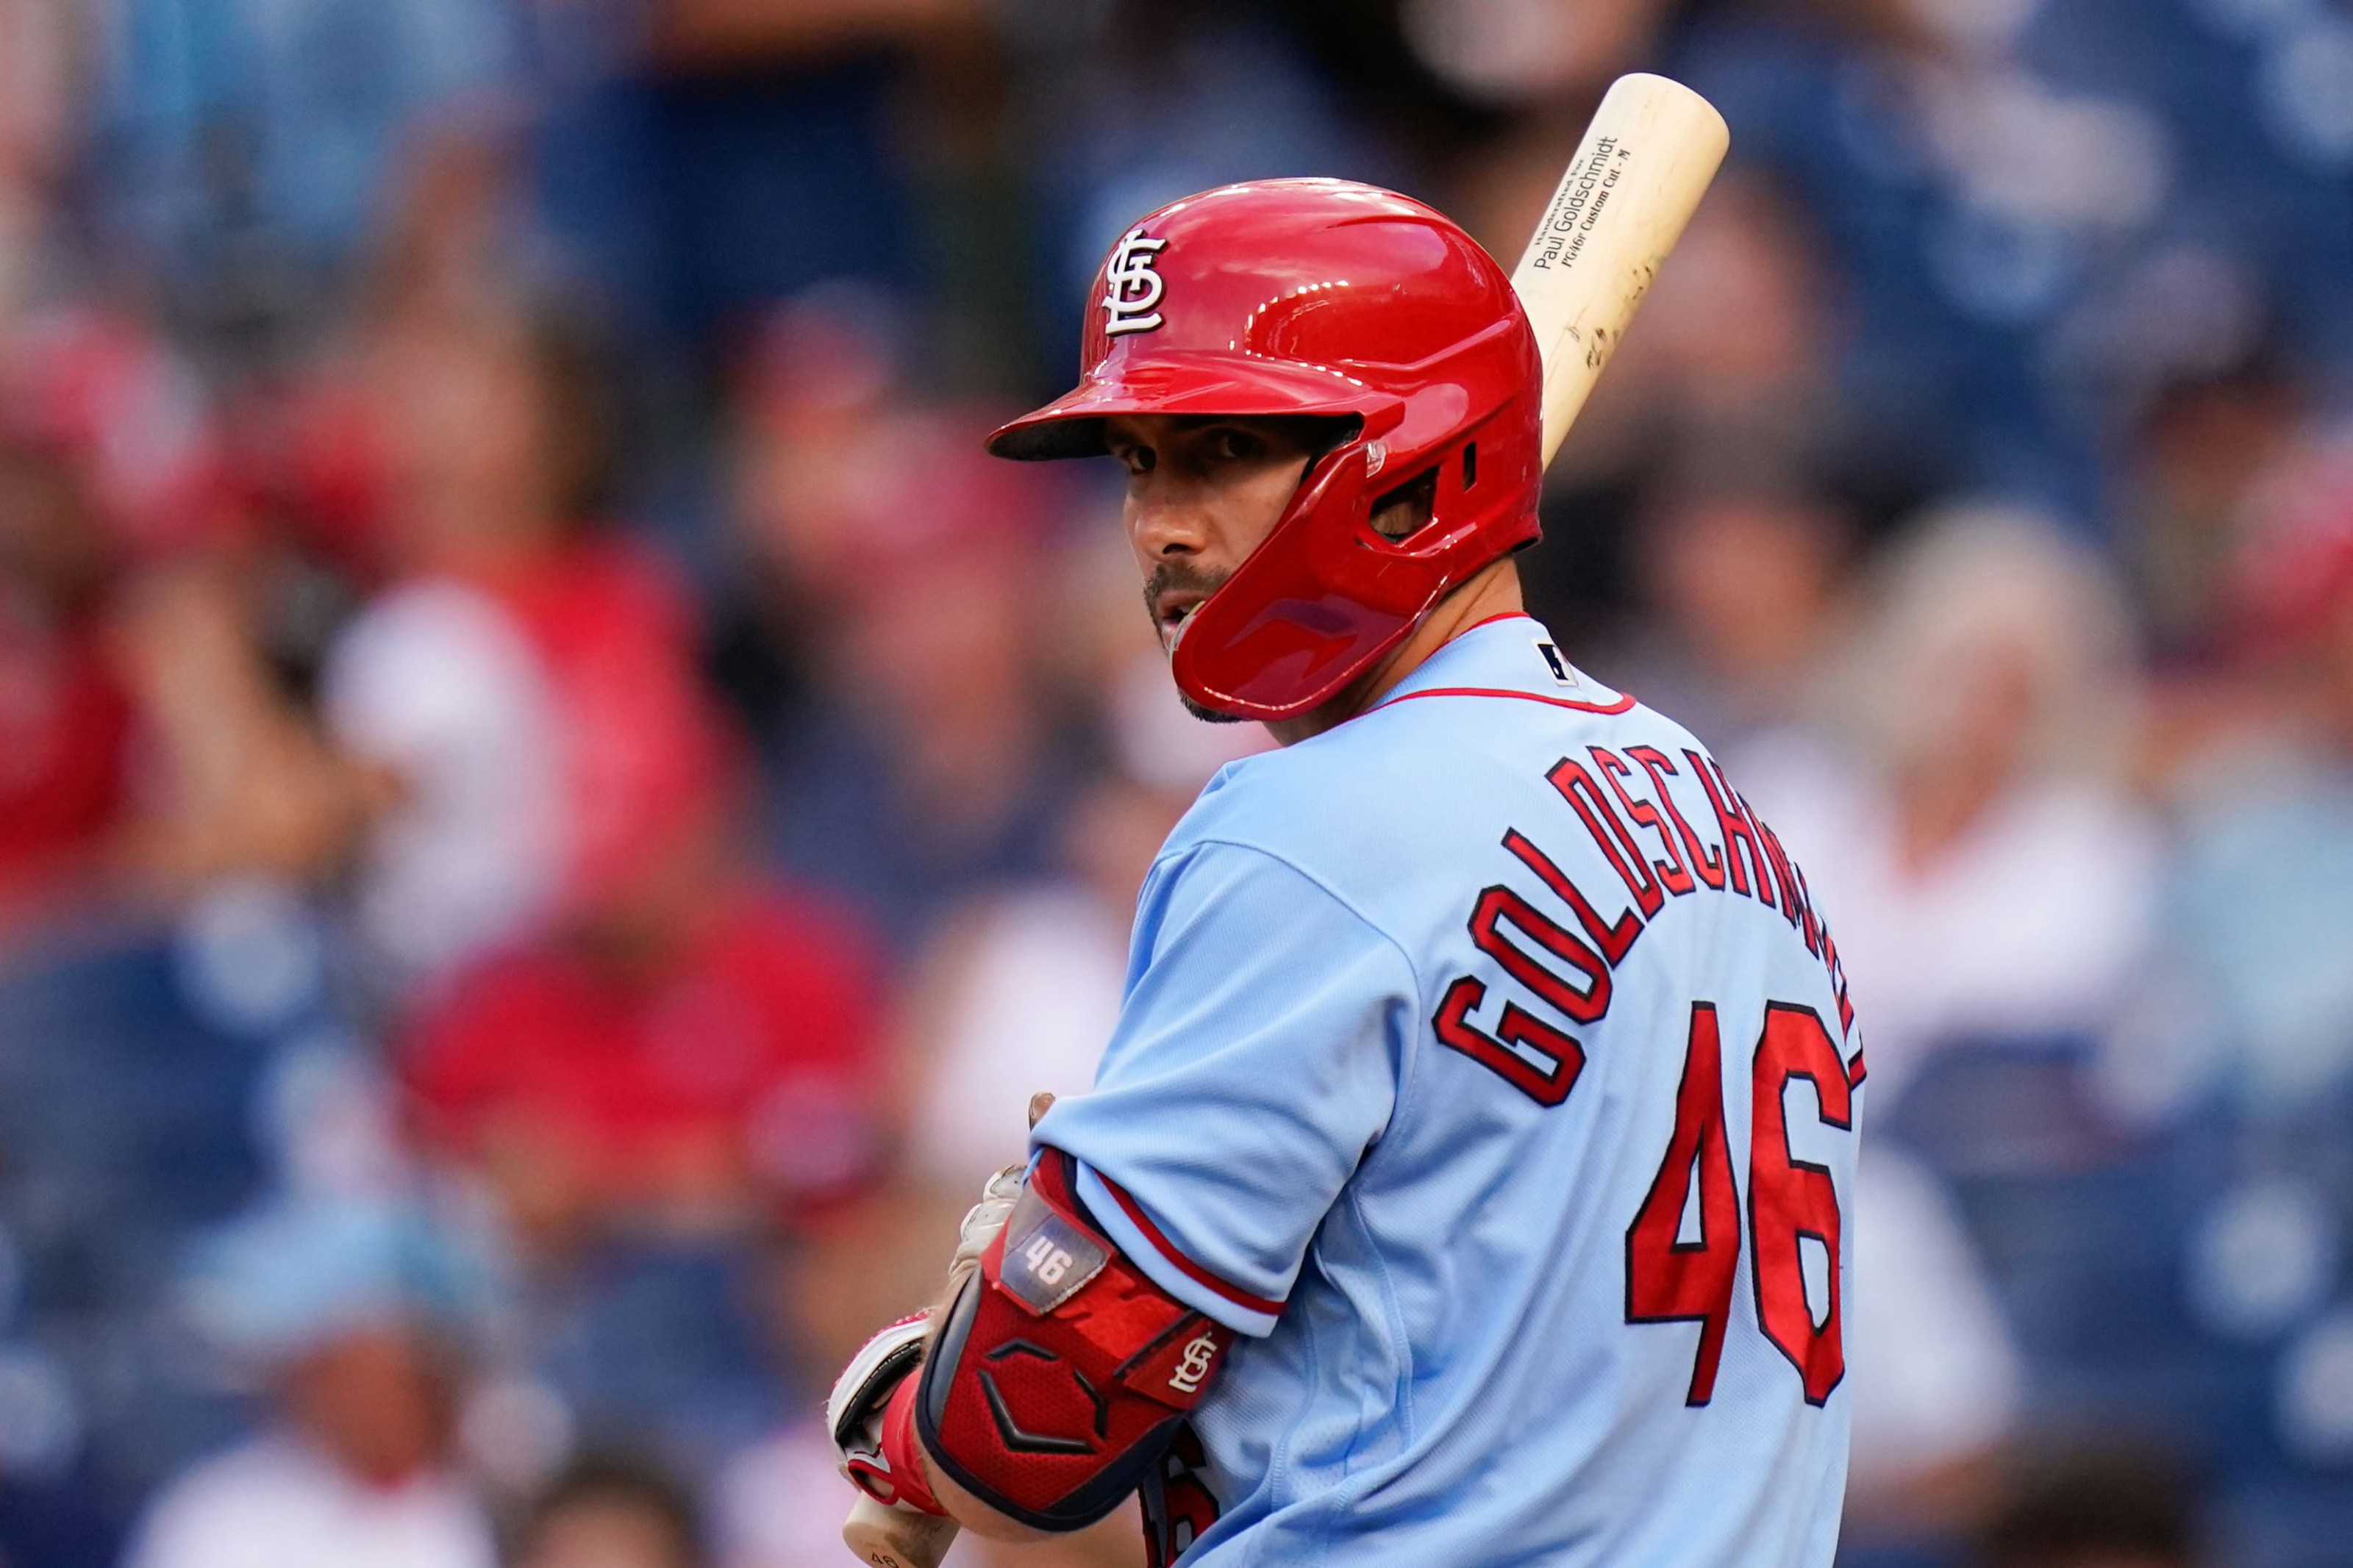 St. Louis Cardinals first baseman Paul Goldschmidt, MLB Rumors